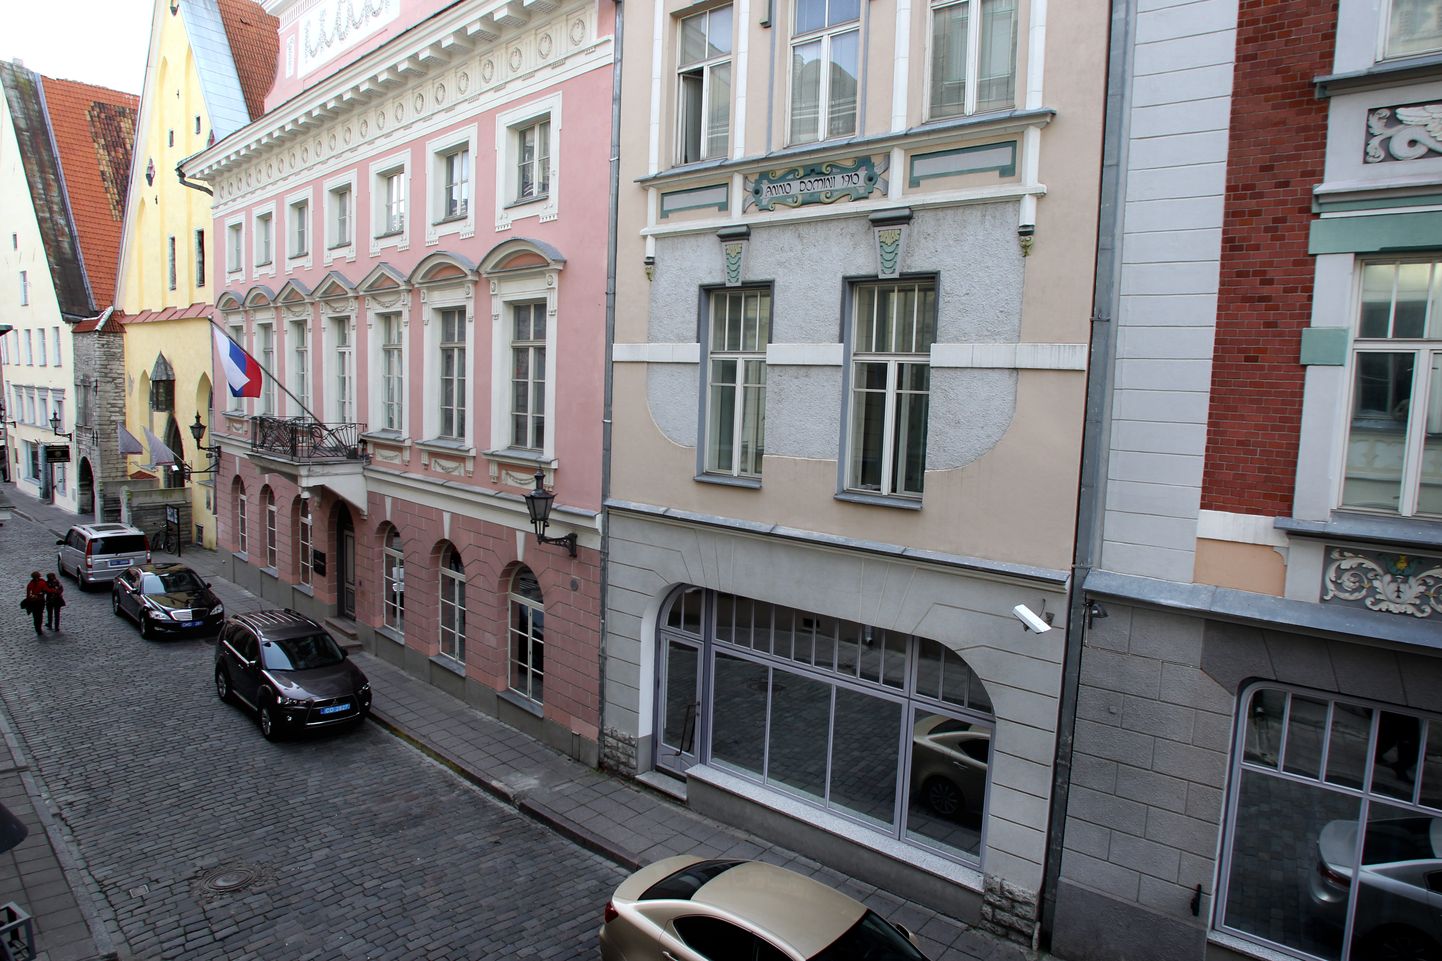 Venemaa suursaatkonna hoone Tallinnas Pikal tänaval.